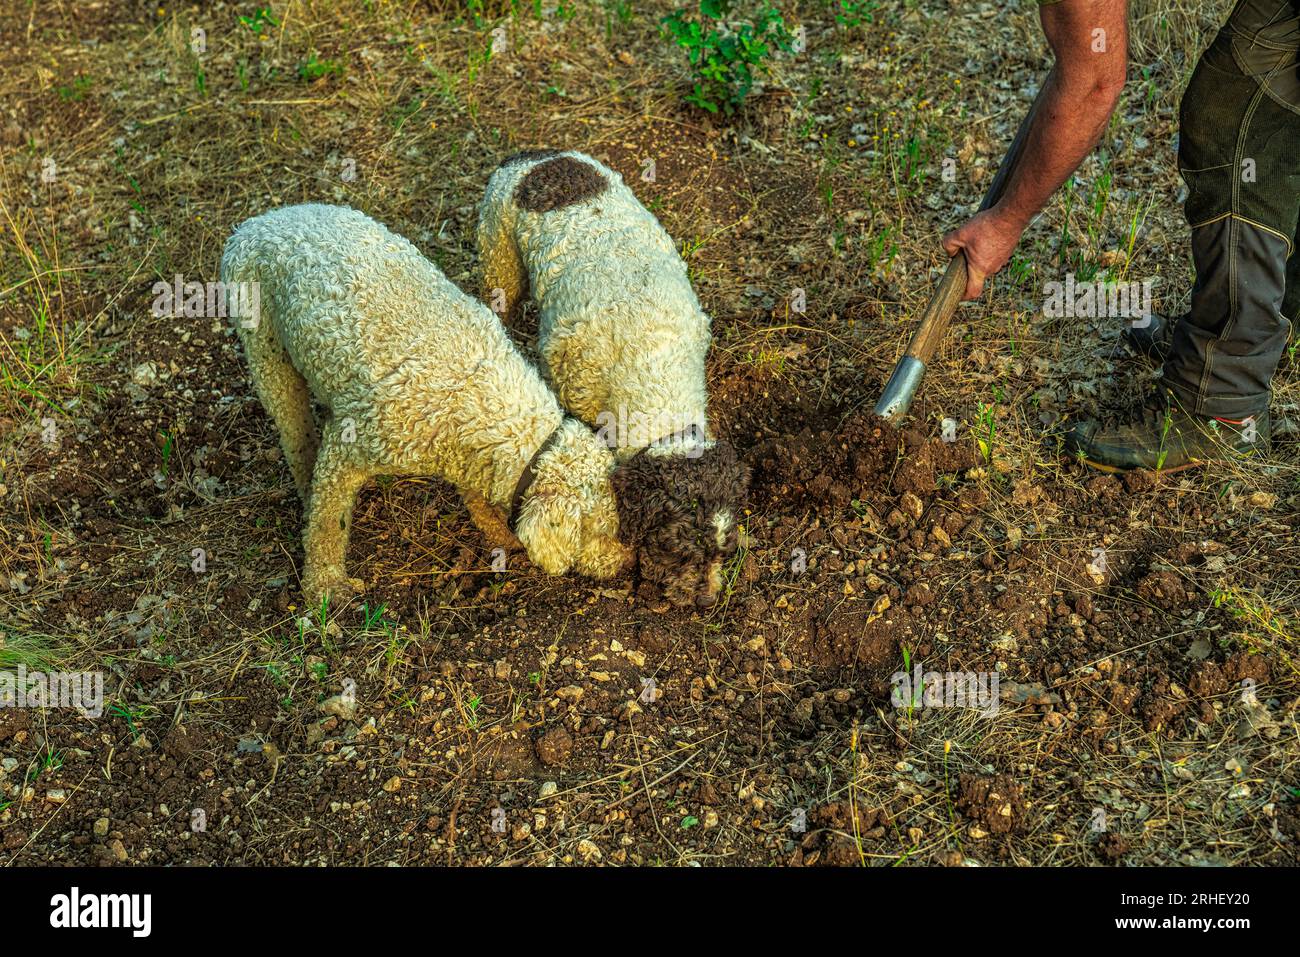 2 perros de Lagotto Romagnolo, perro de trufa, cavar en busca de trufas. El hombre ayuda a los perros a cavar el suelo demasiado duro. Abruzzo, Italia, Europa Foto de stock